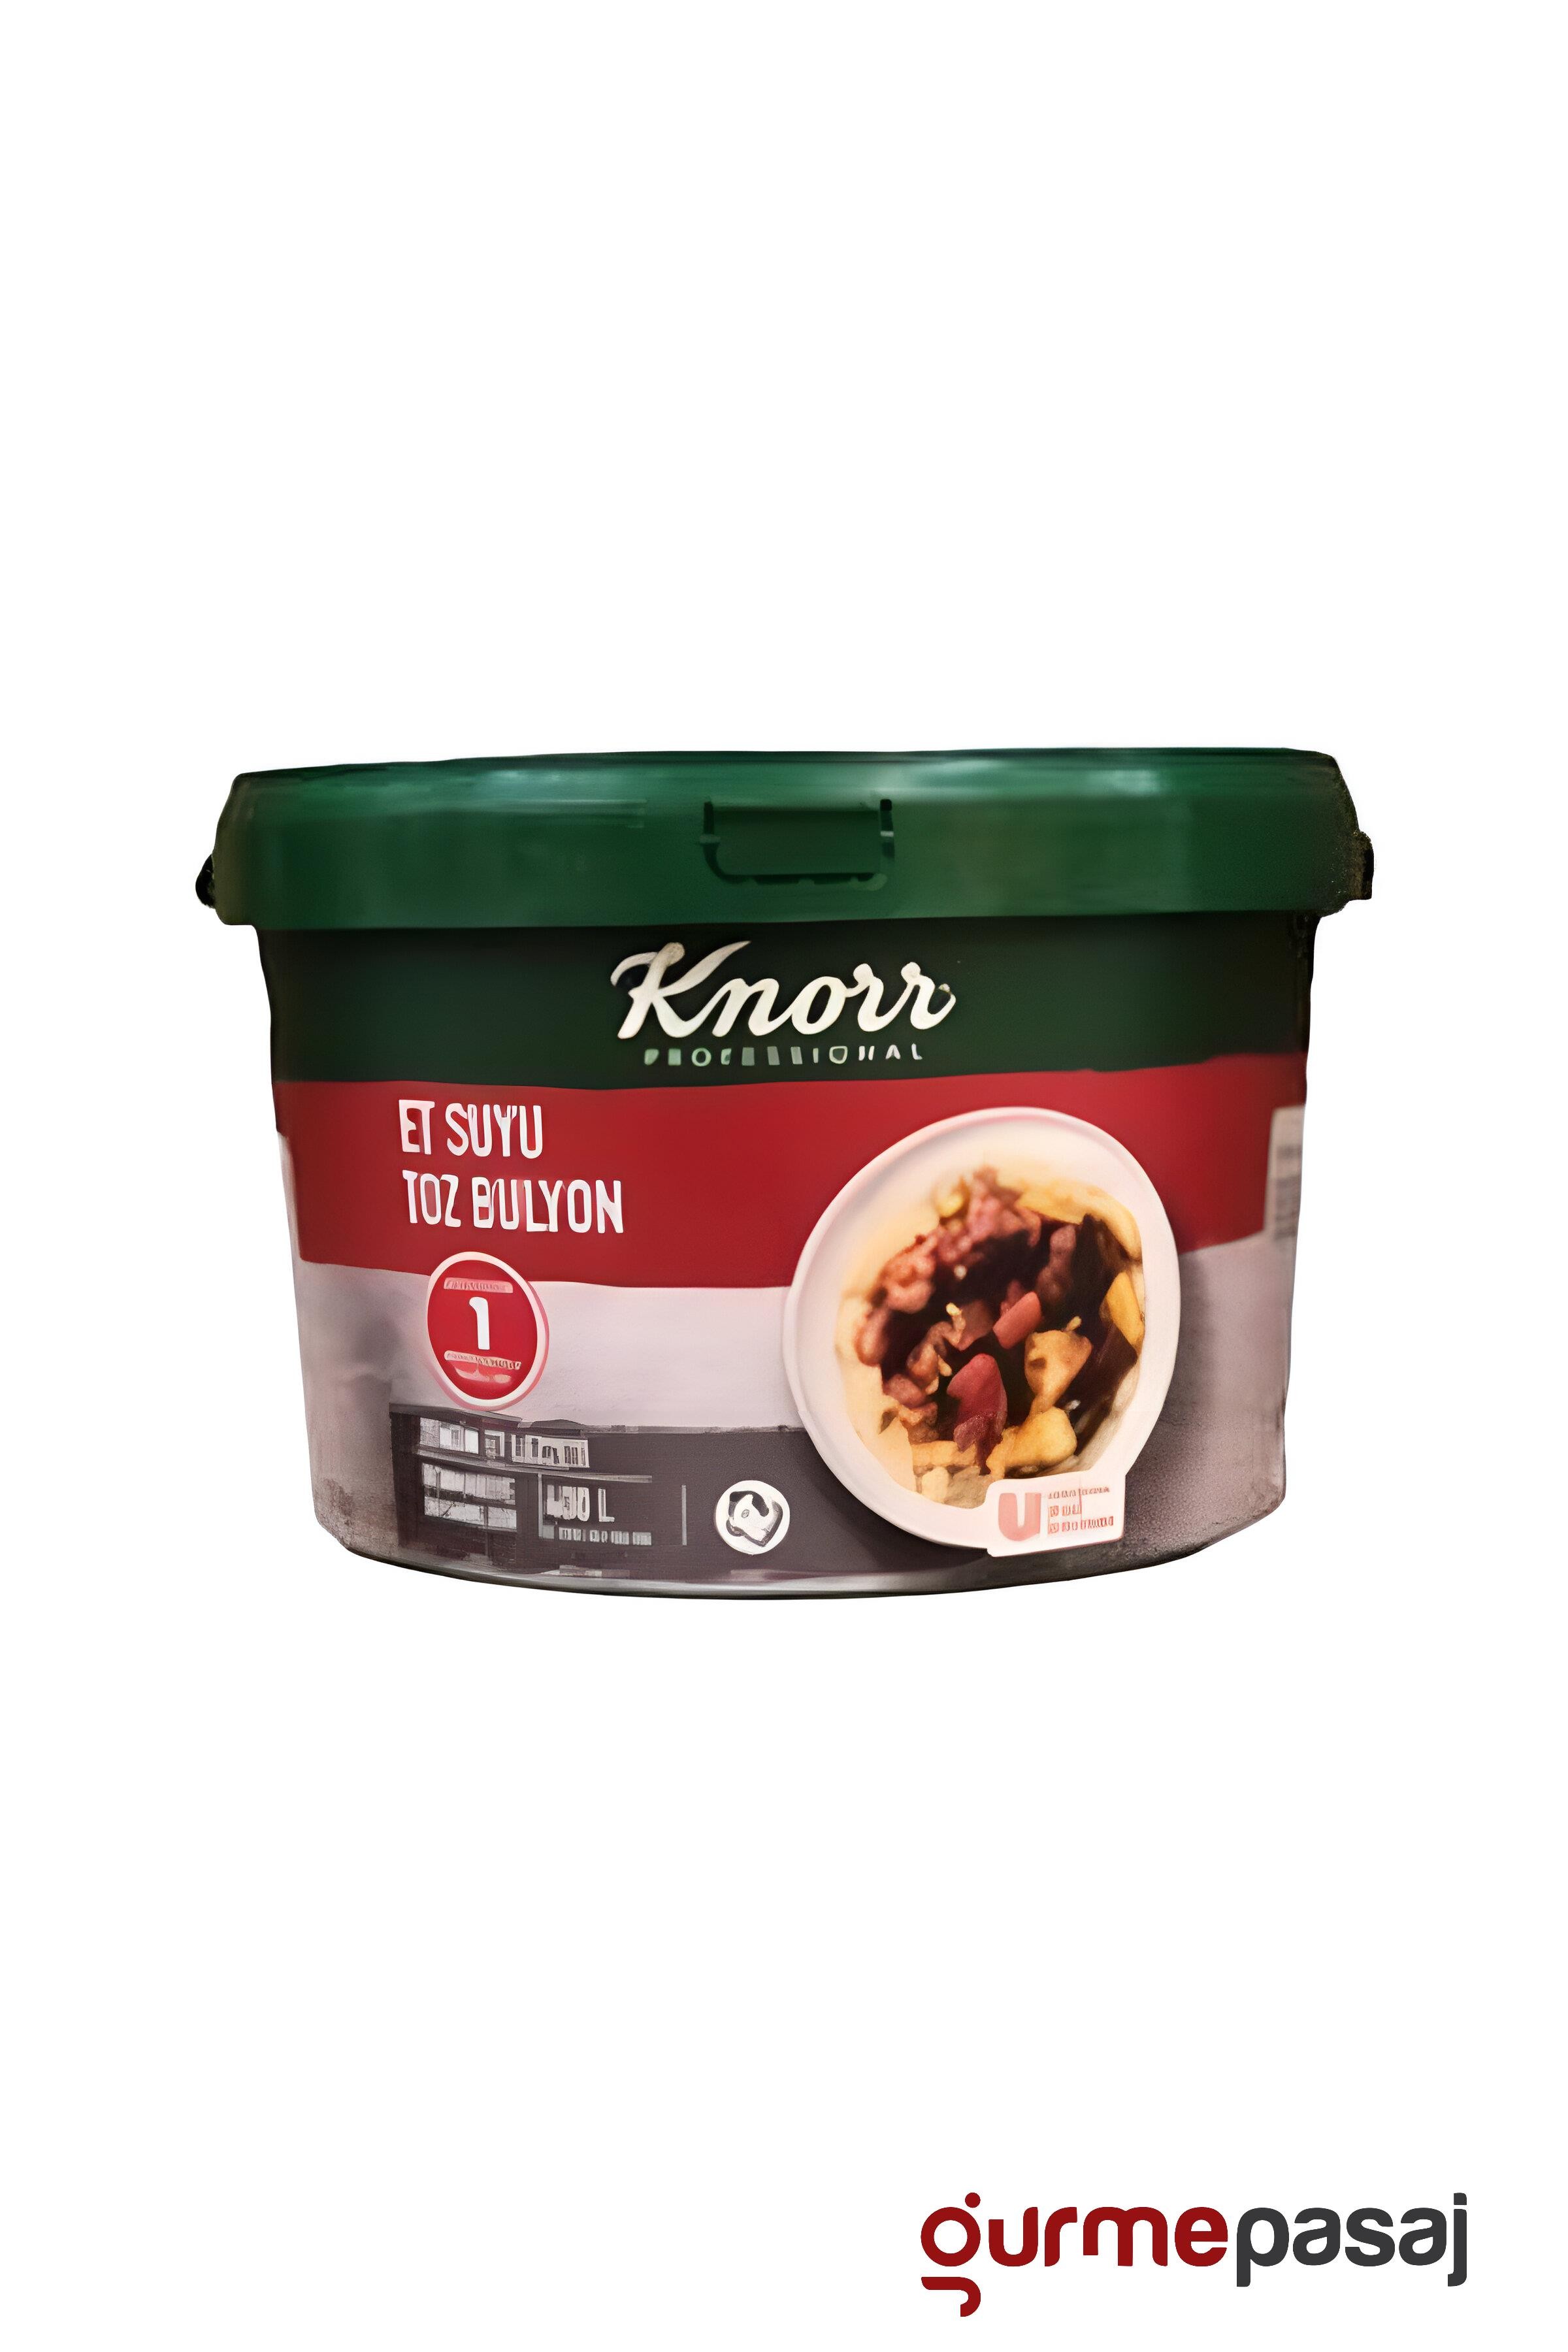 Knorr Et Bulyon 7 KG